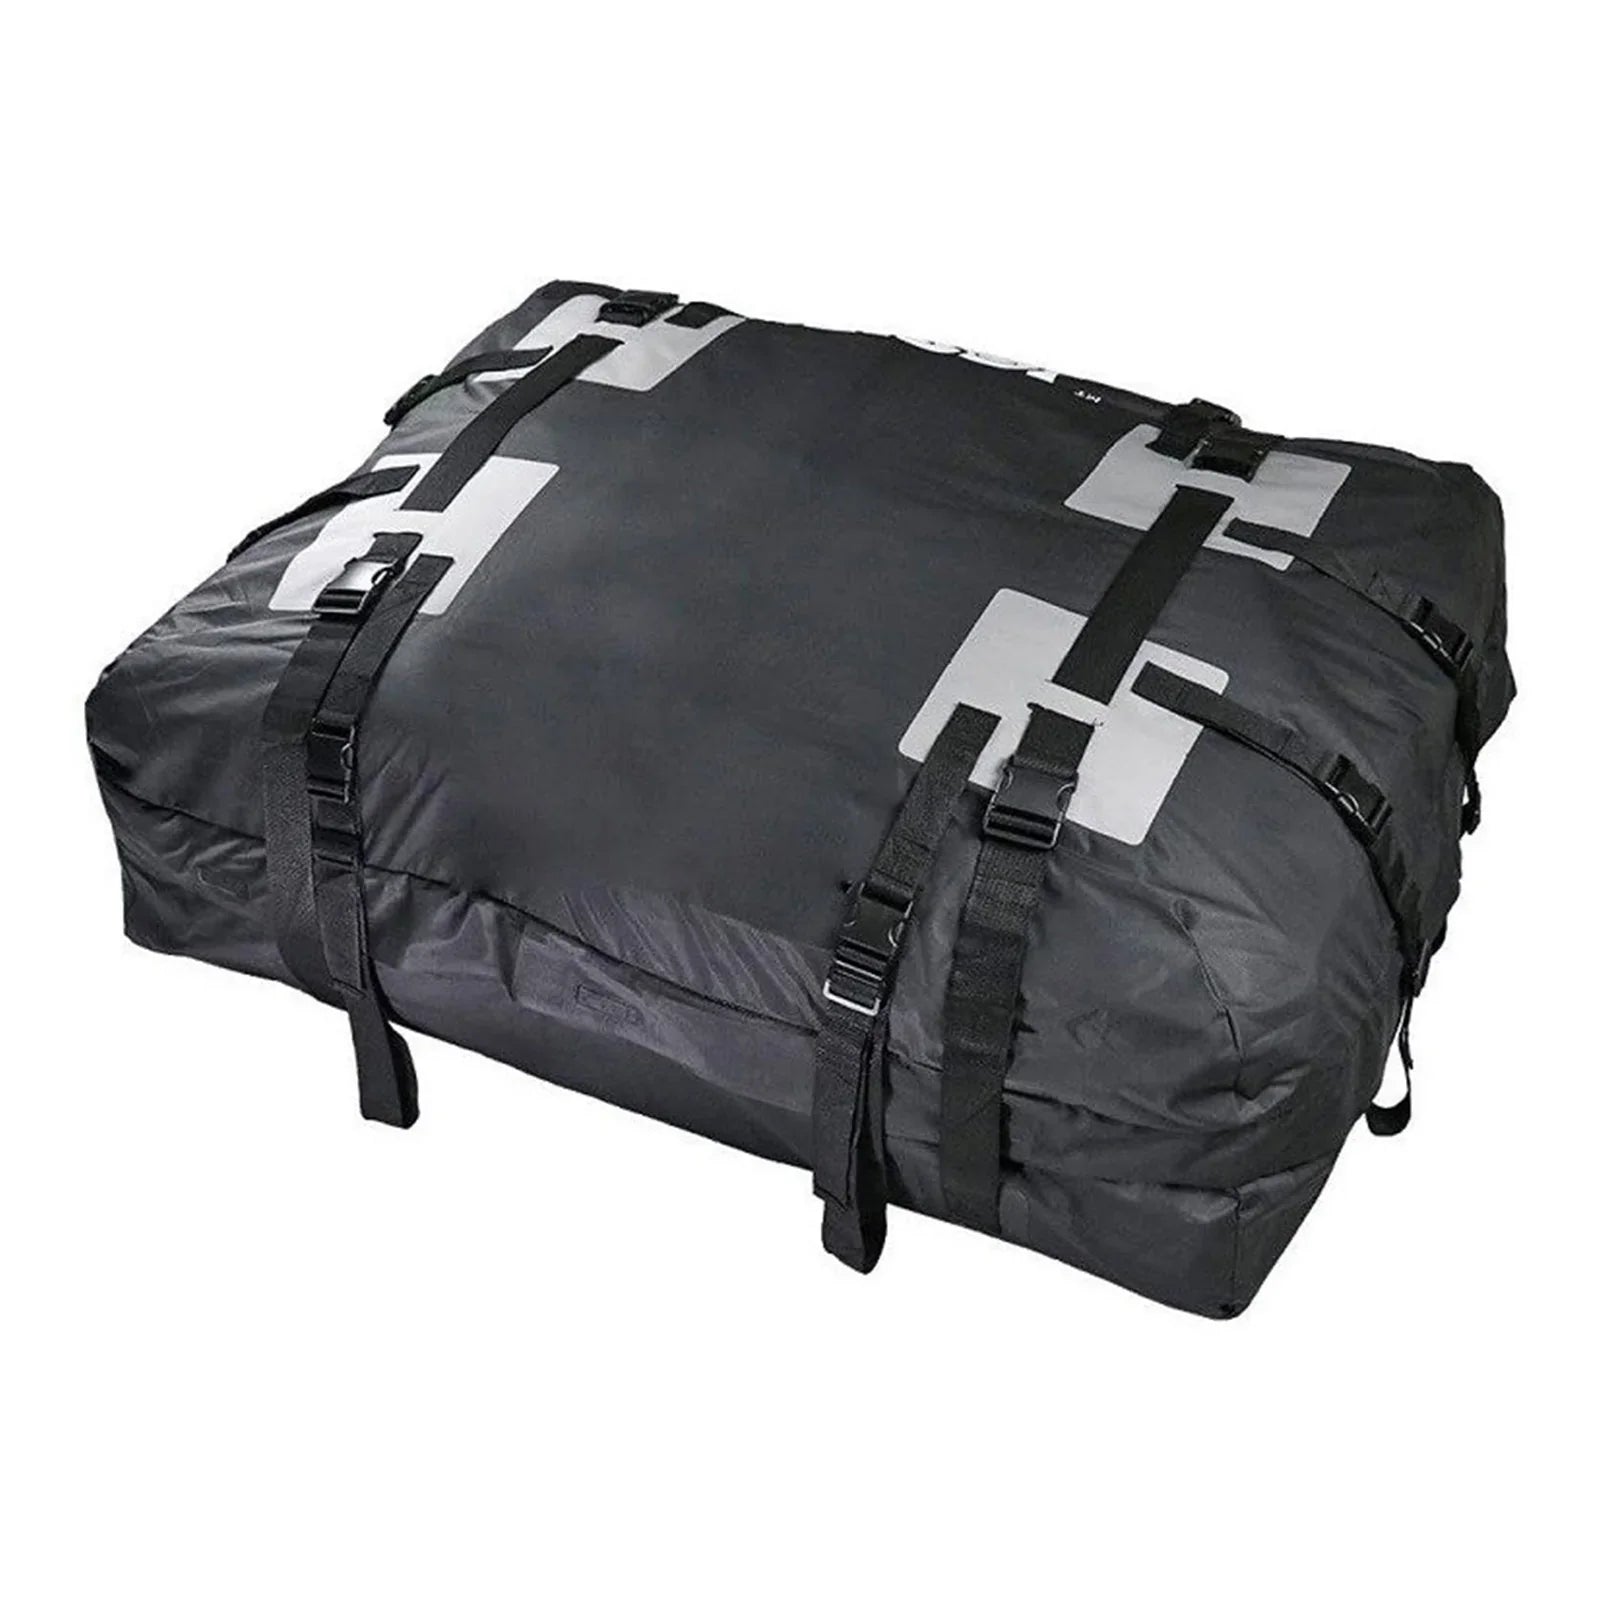 Toit de voiture étanche porte-bagages transporteur Cargo sac bagages stockage Cube sac voyage